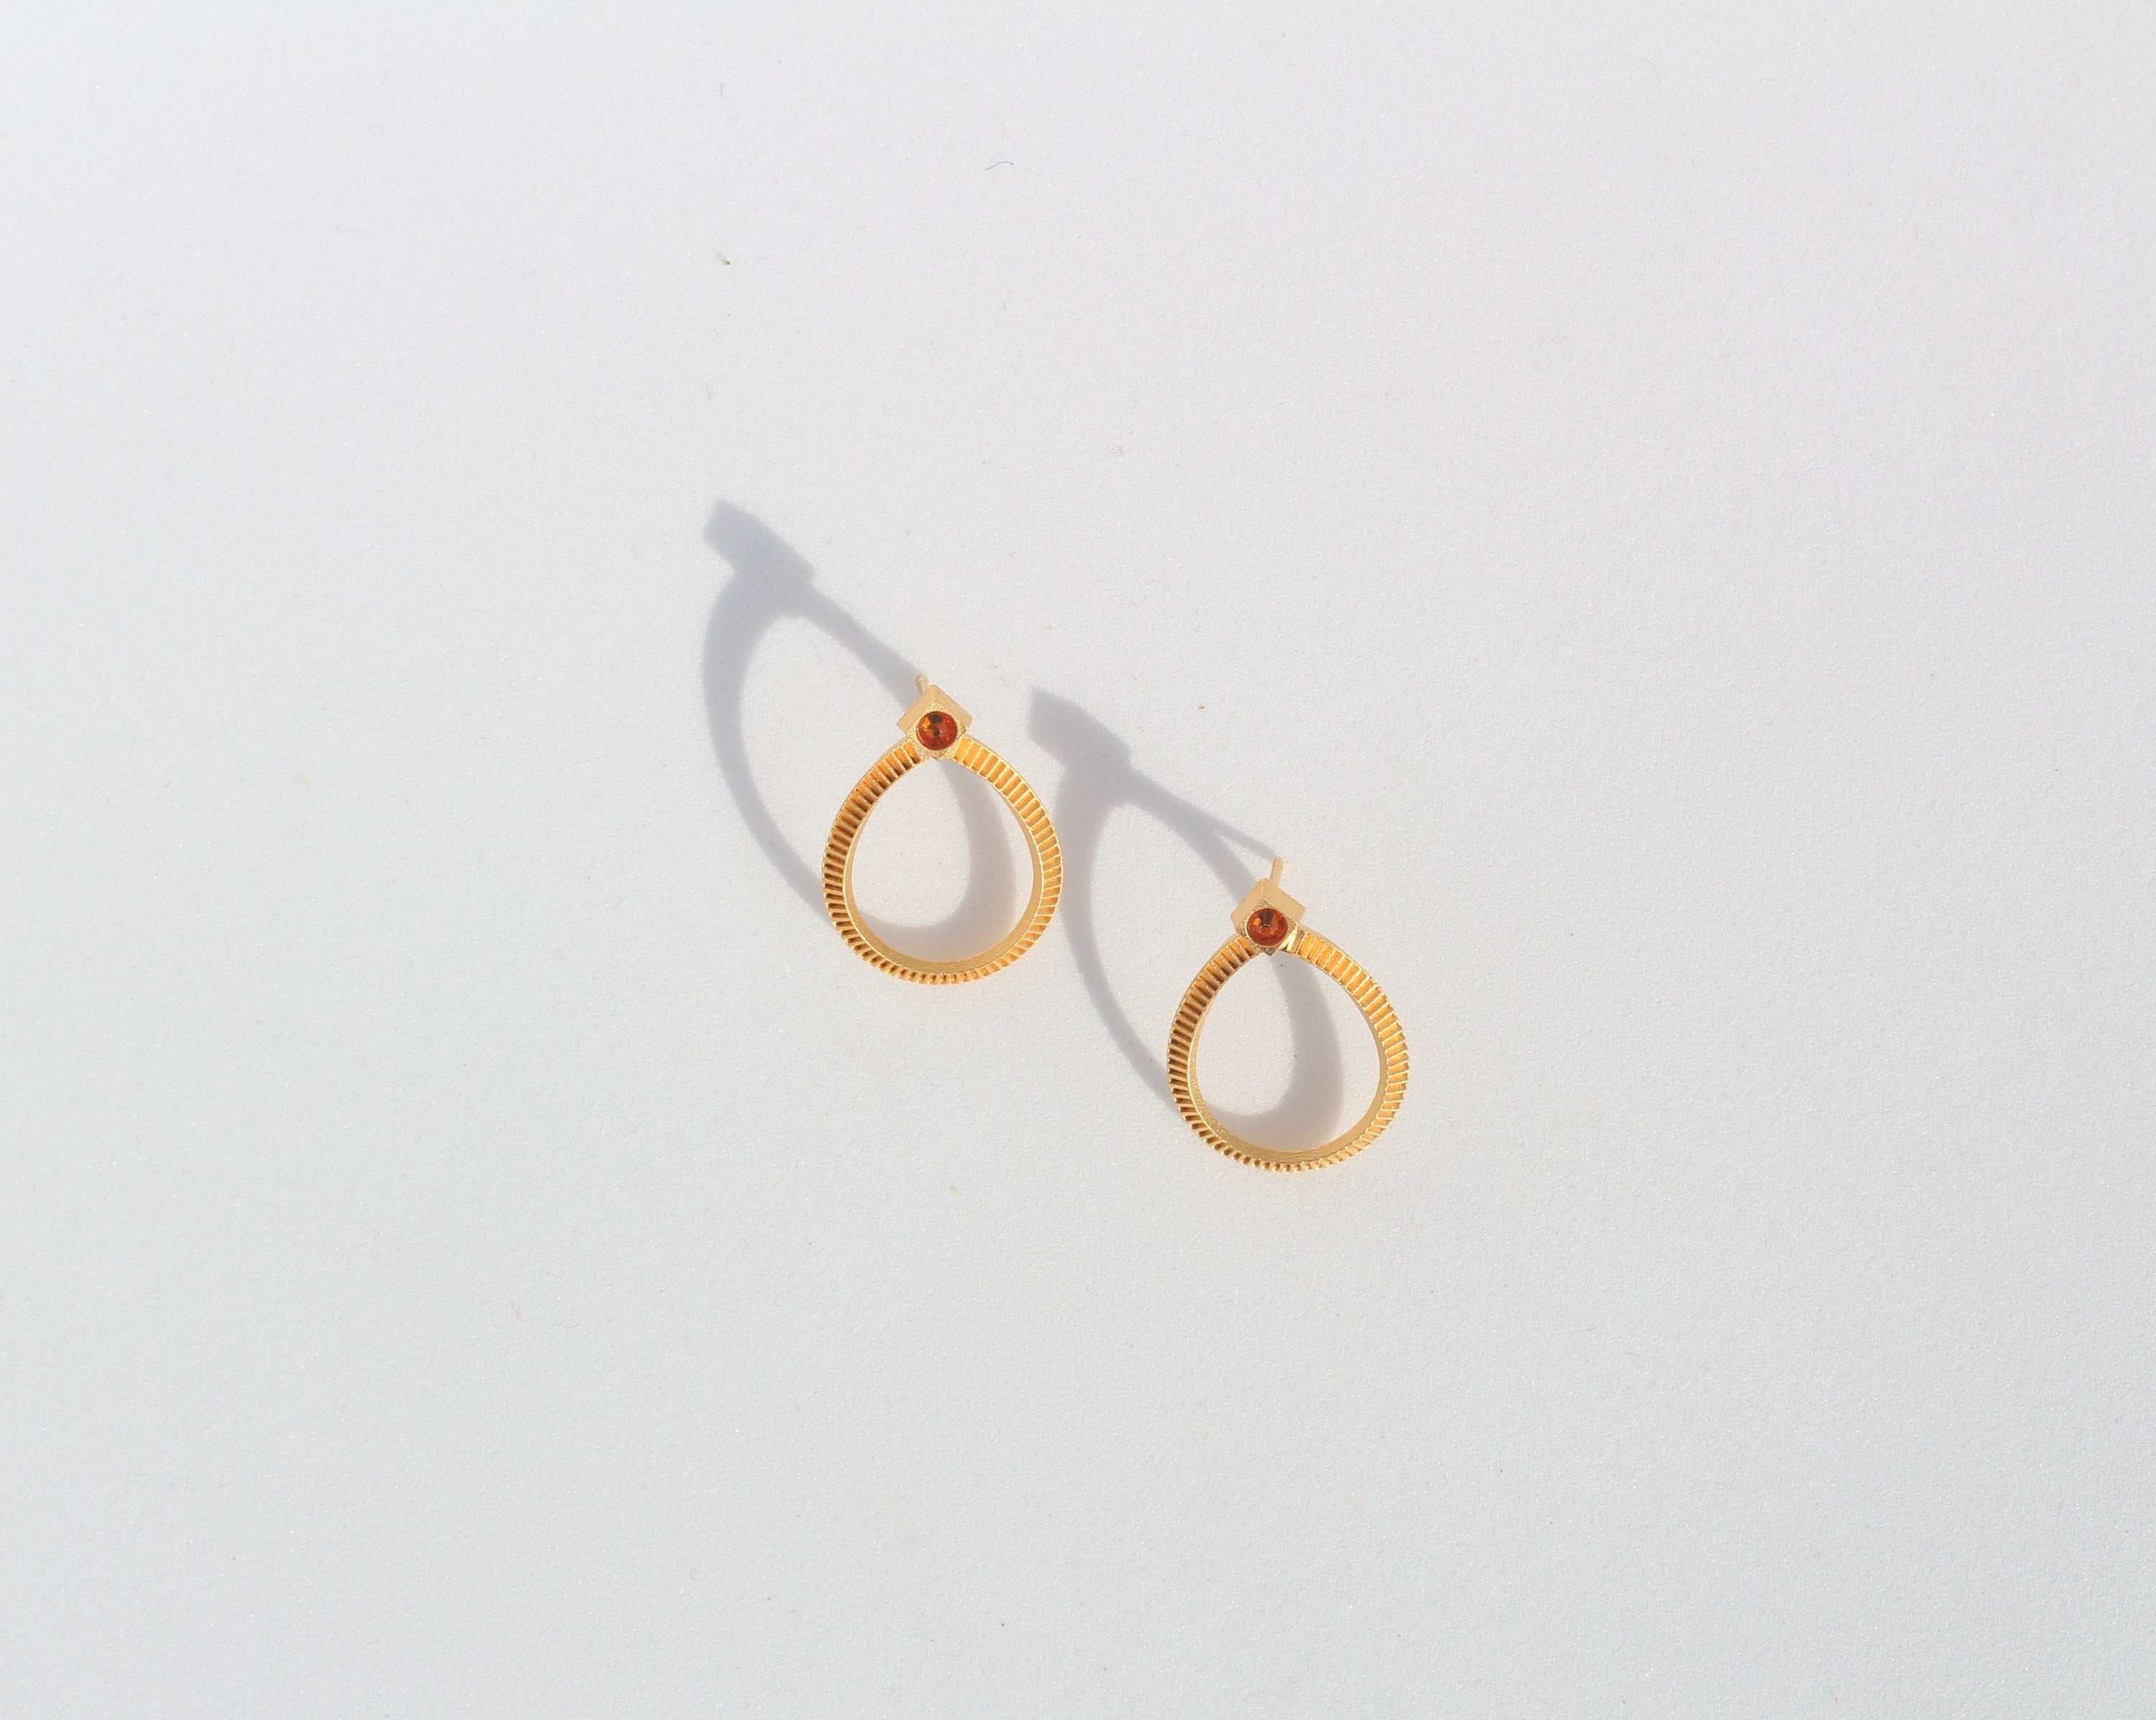 Handmade Calliophis gold earrings #01 by Fann!